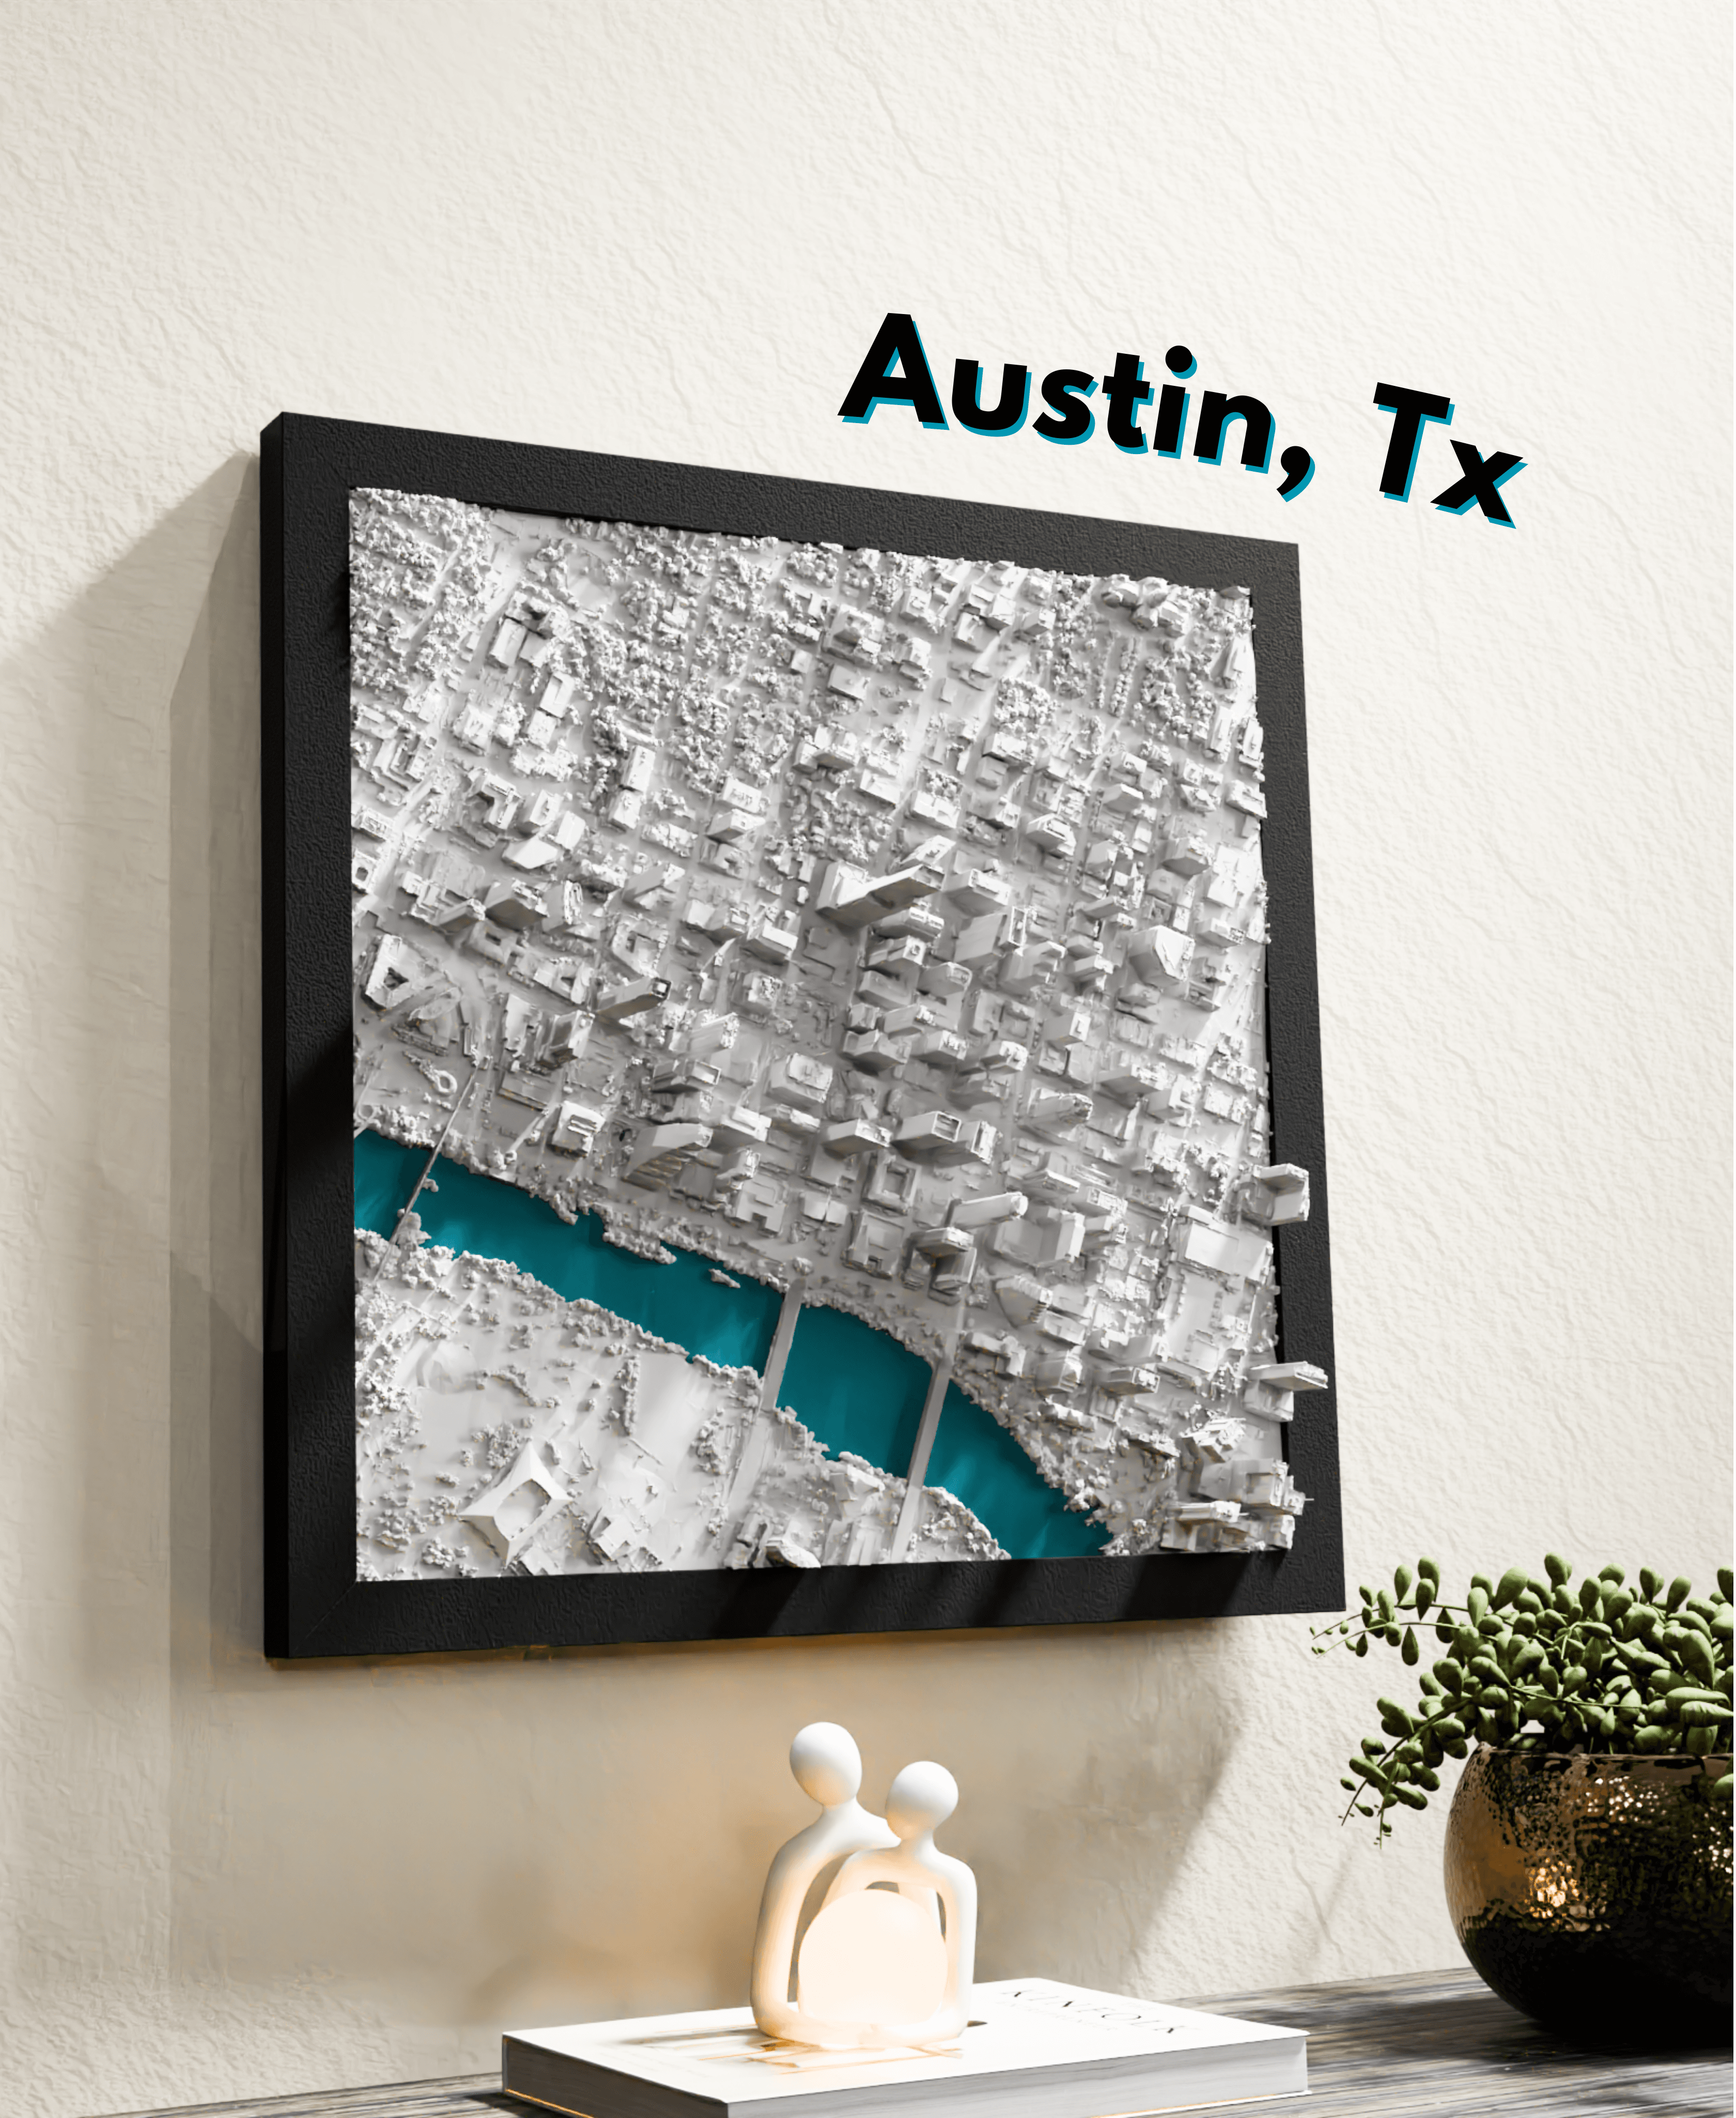 Austin, TX_Solid.stl 3d model